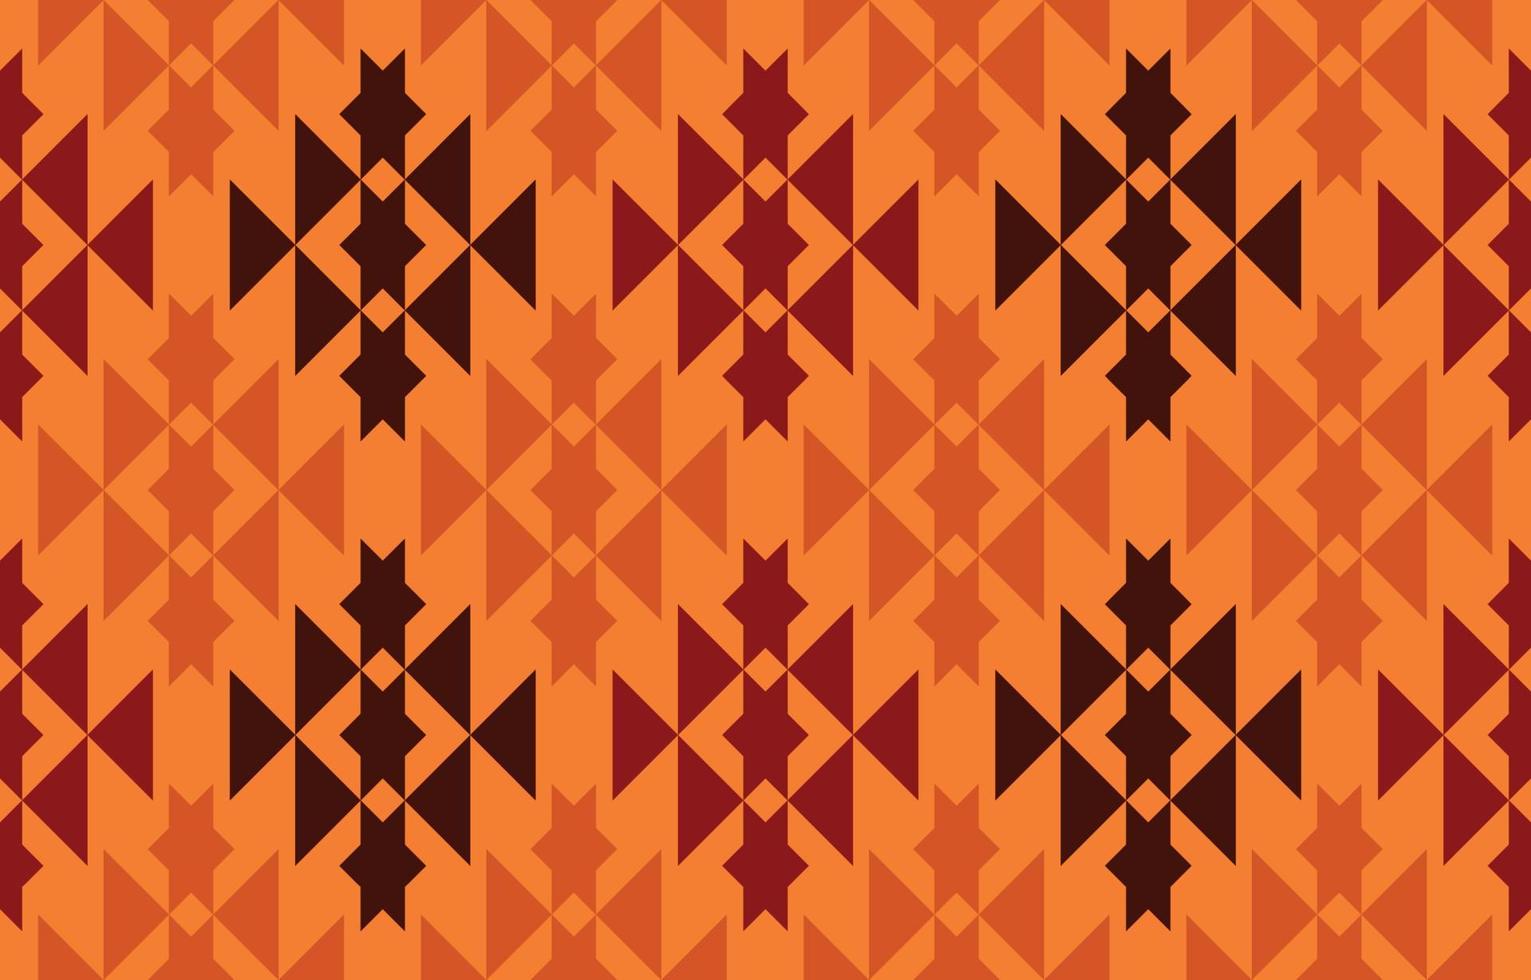 Navajo-Stoff nahtloses Muster geometrischer Stammes-ethnischer traditioneller Hintergrund, Designelemente der amerikanischen Ureinwohner, Design für Teppich, Tapete, Kleidung, Teppich, Interieur, Vektorgrafik-Stickerei. vektor